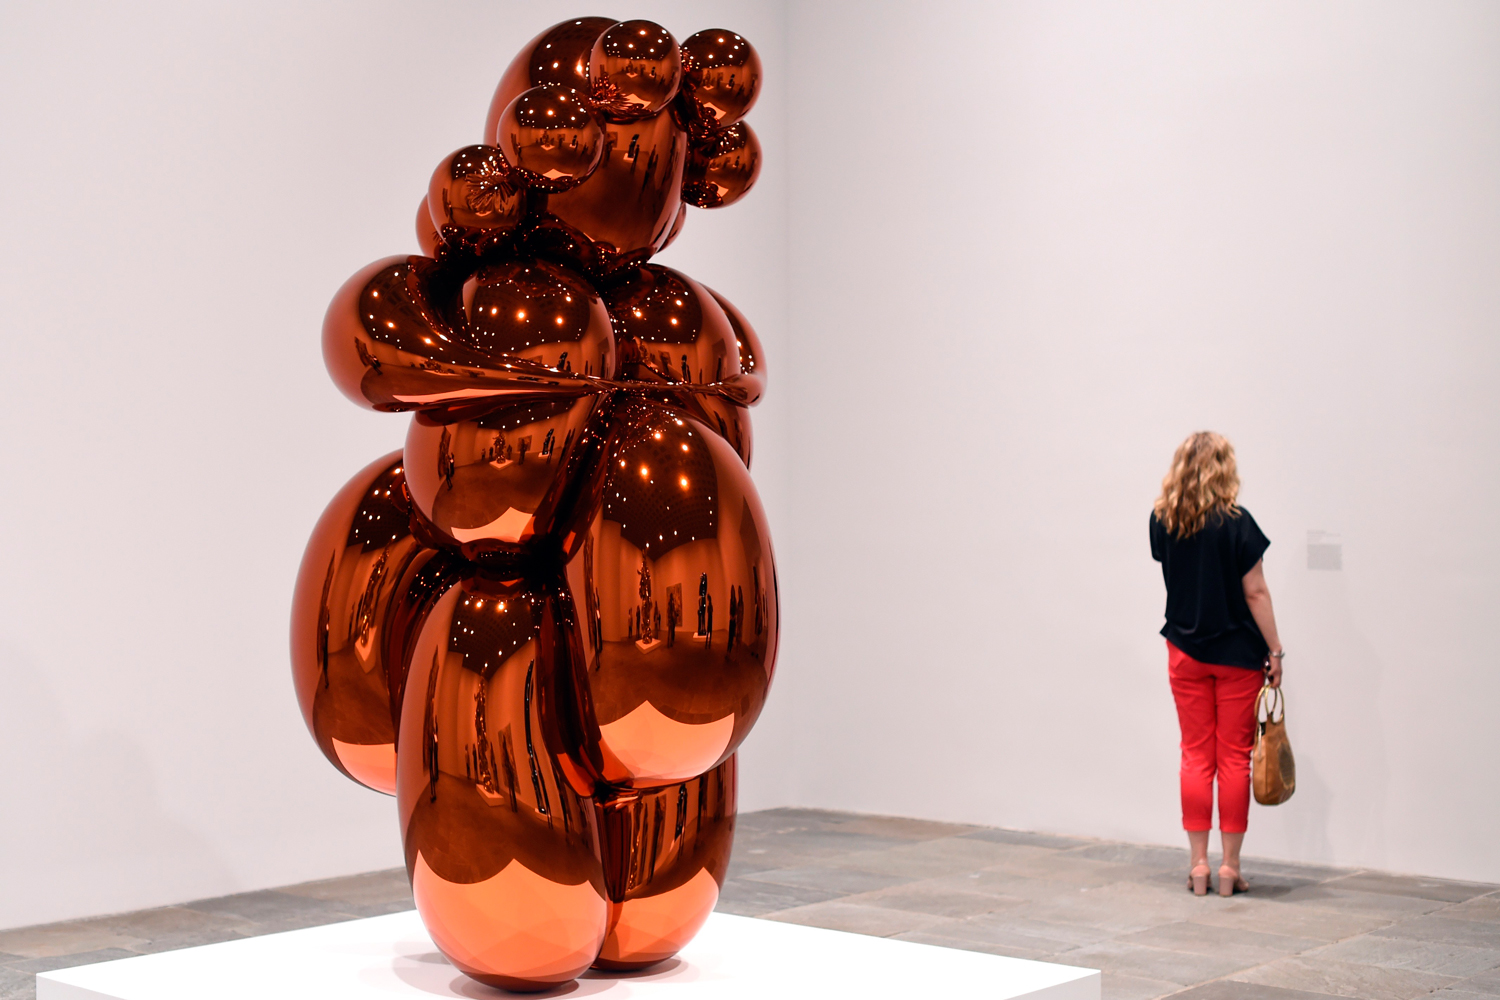 El artista contemporáneo Jeff Koons ofrece una retrospectiva de su carrera en el Museo Withney